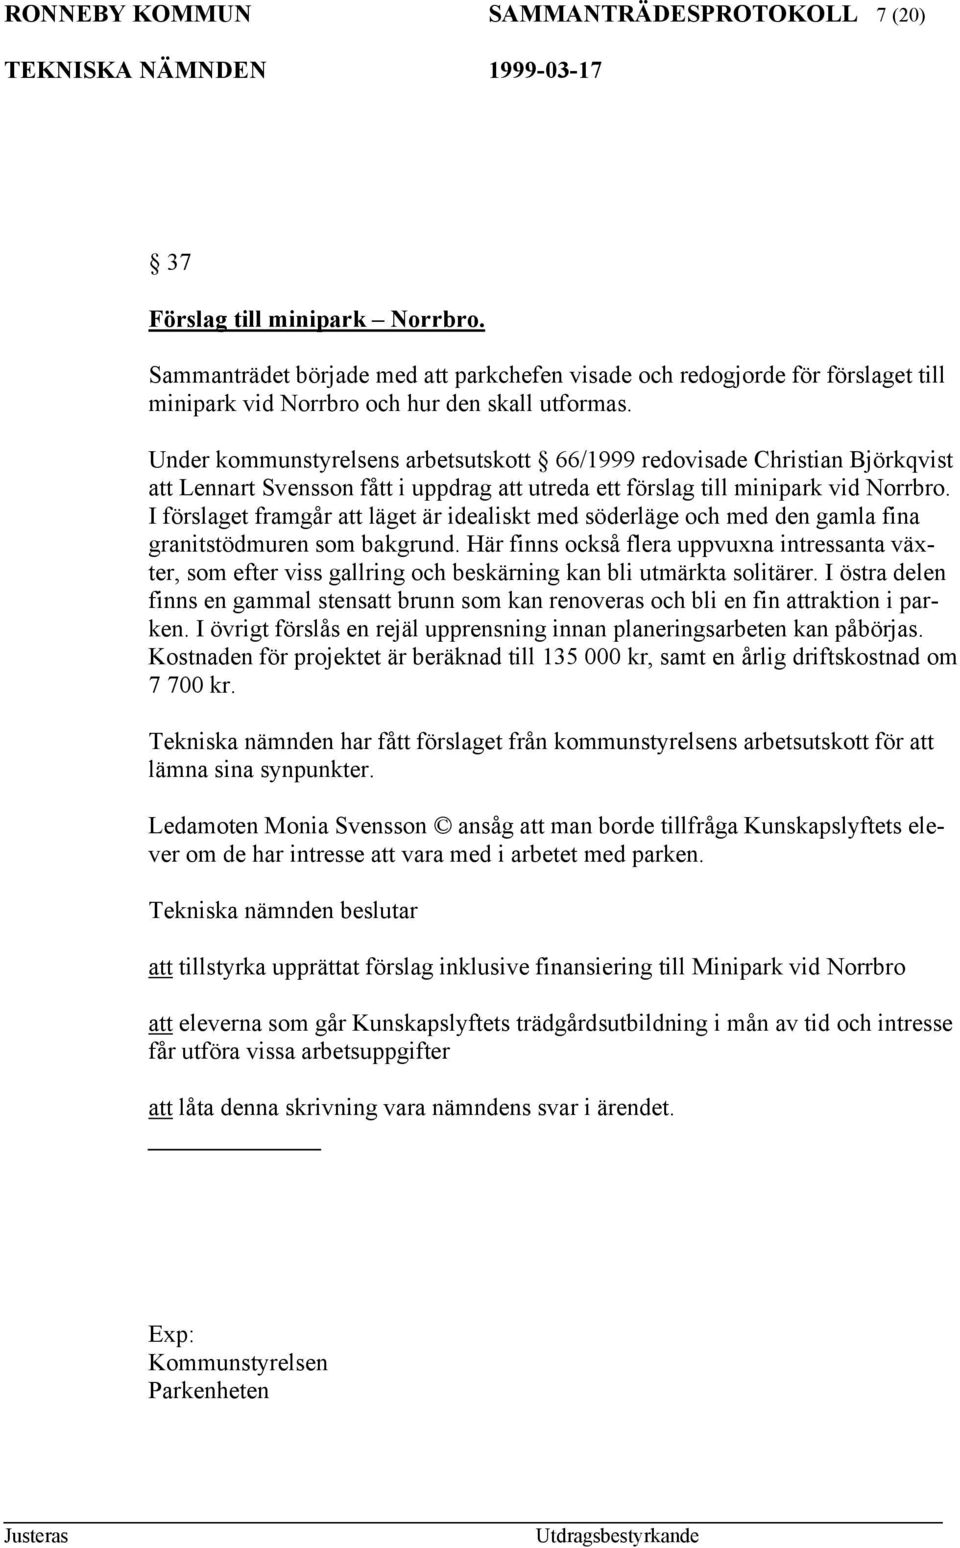 Under kommunstyrelsens arbetsutskott 66/1999 redovisade Christian Björkqvist att Lennart Svensson fått i uppdrag att utreda ett förslag till minipark vid Norrbro.